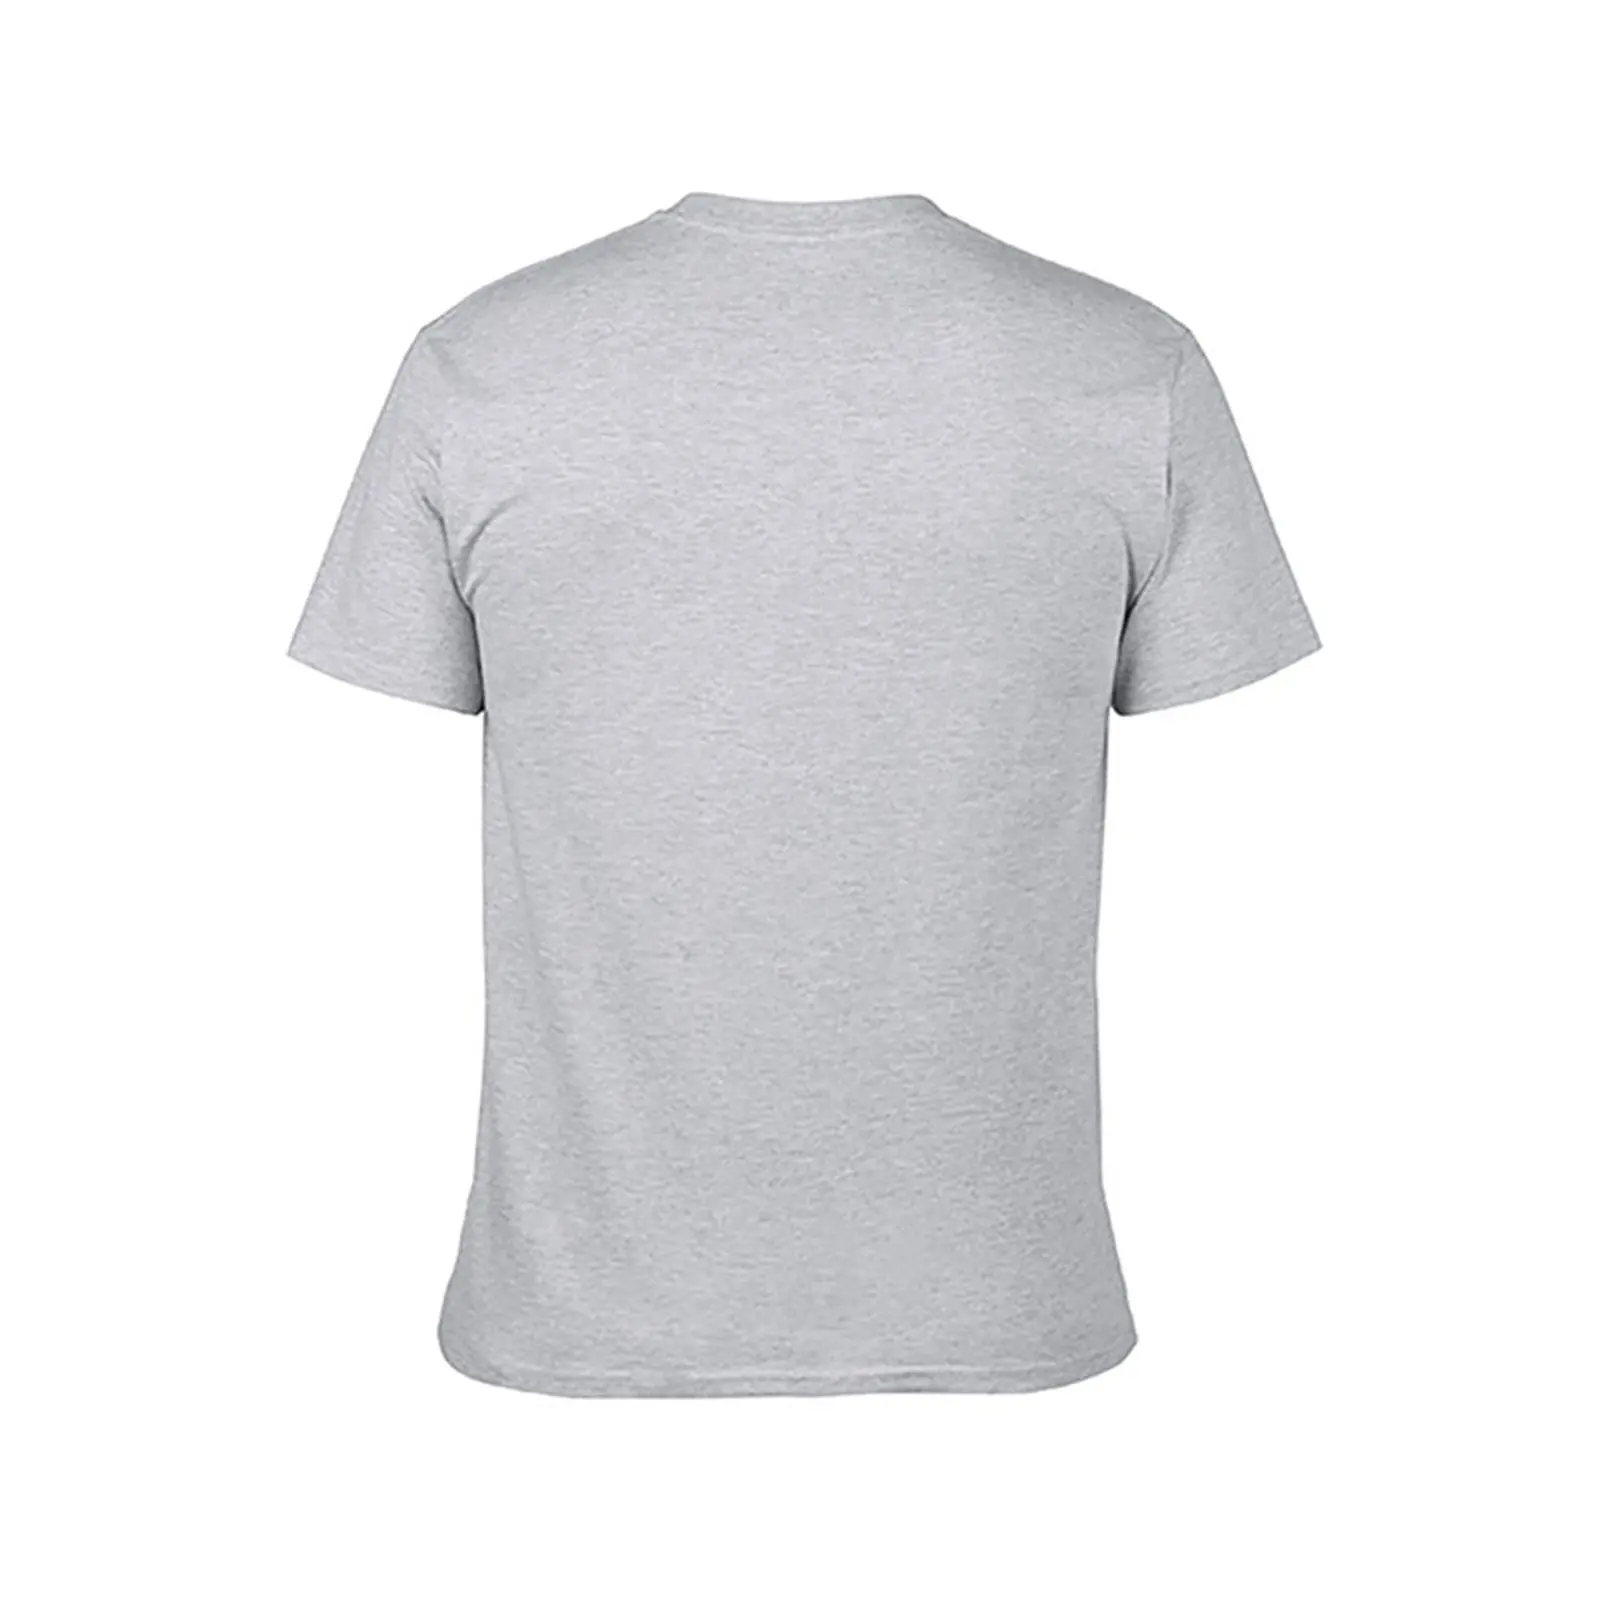 Balamb Garden Festival T-Shirt mais o tamanho de t-shirts Estética roupas funny t-shirt gráficos de t-shirt dos Homens t shirts